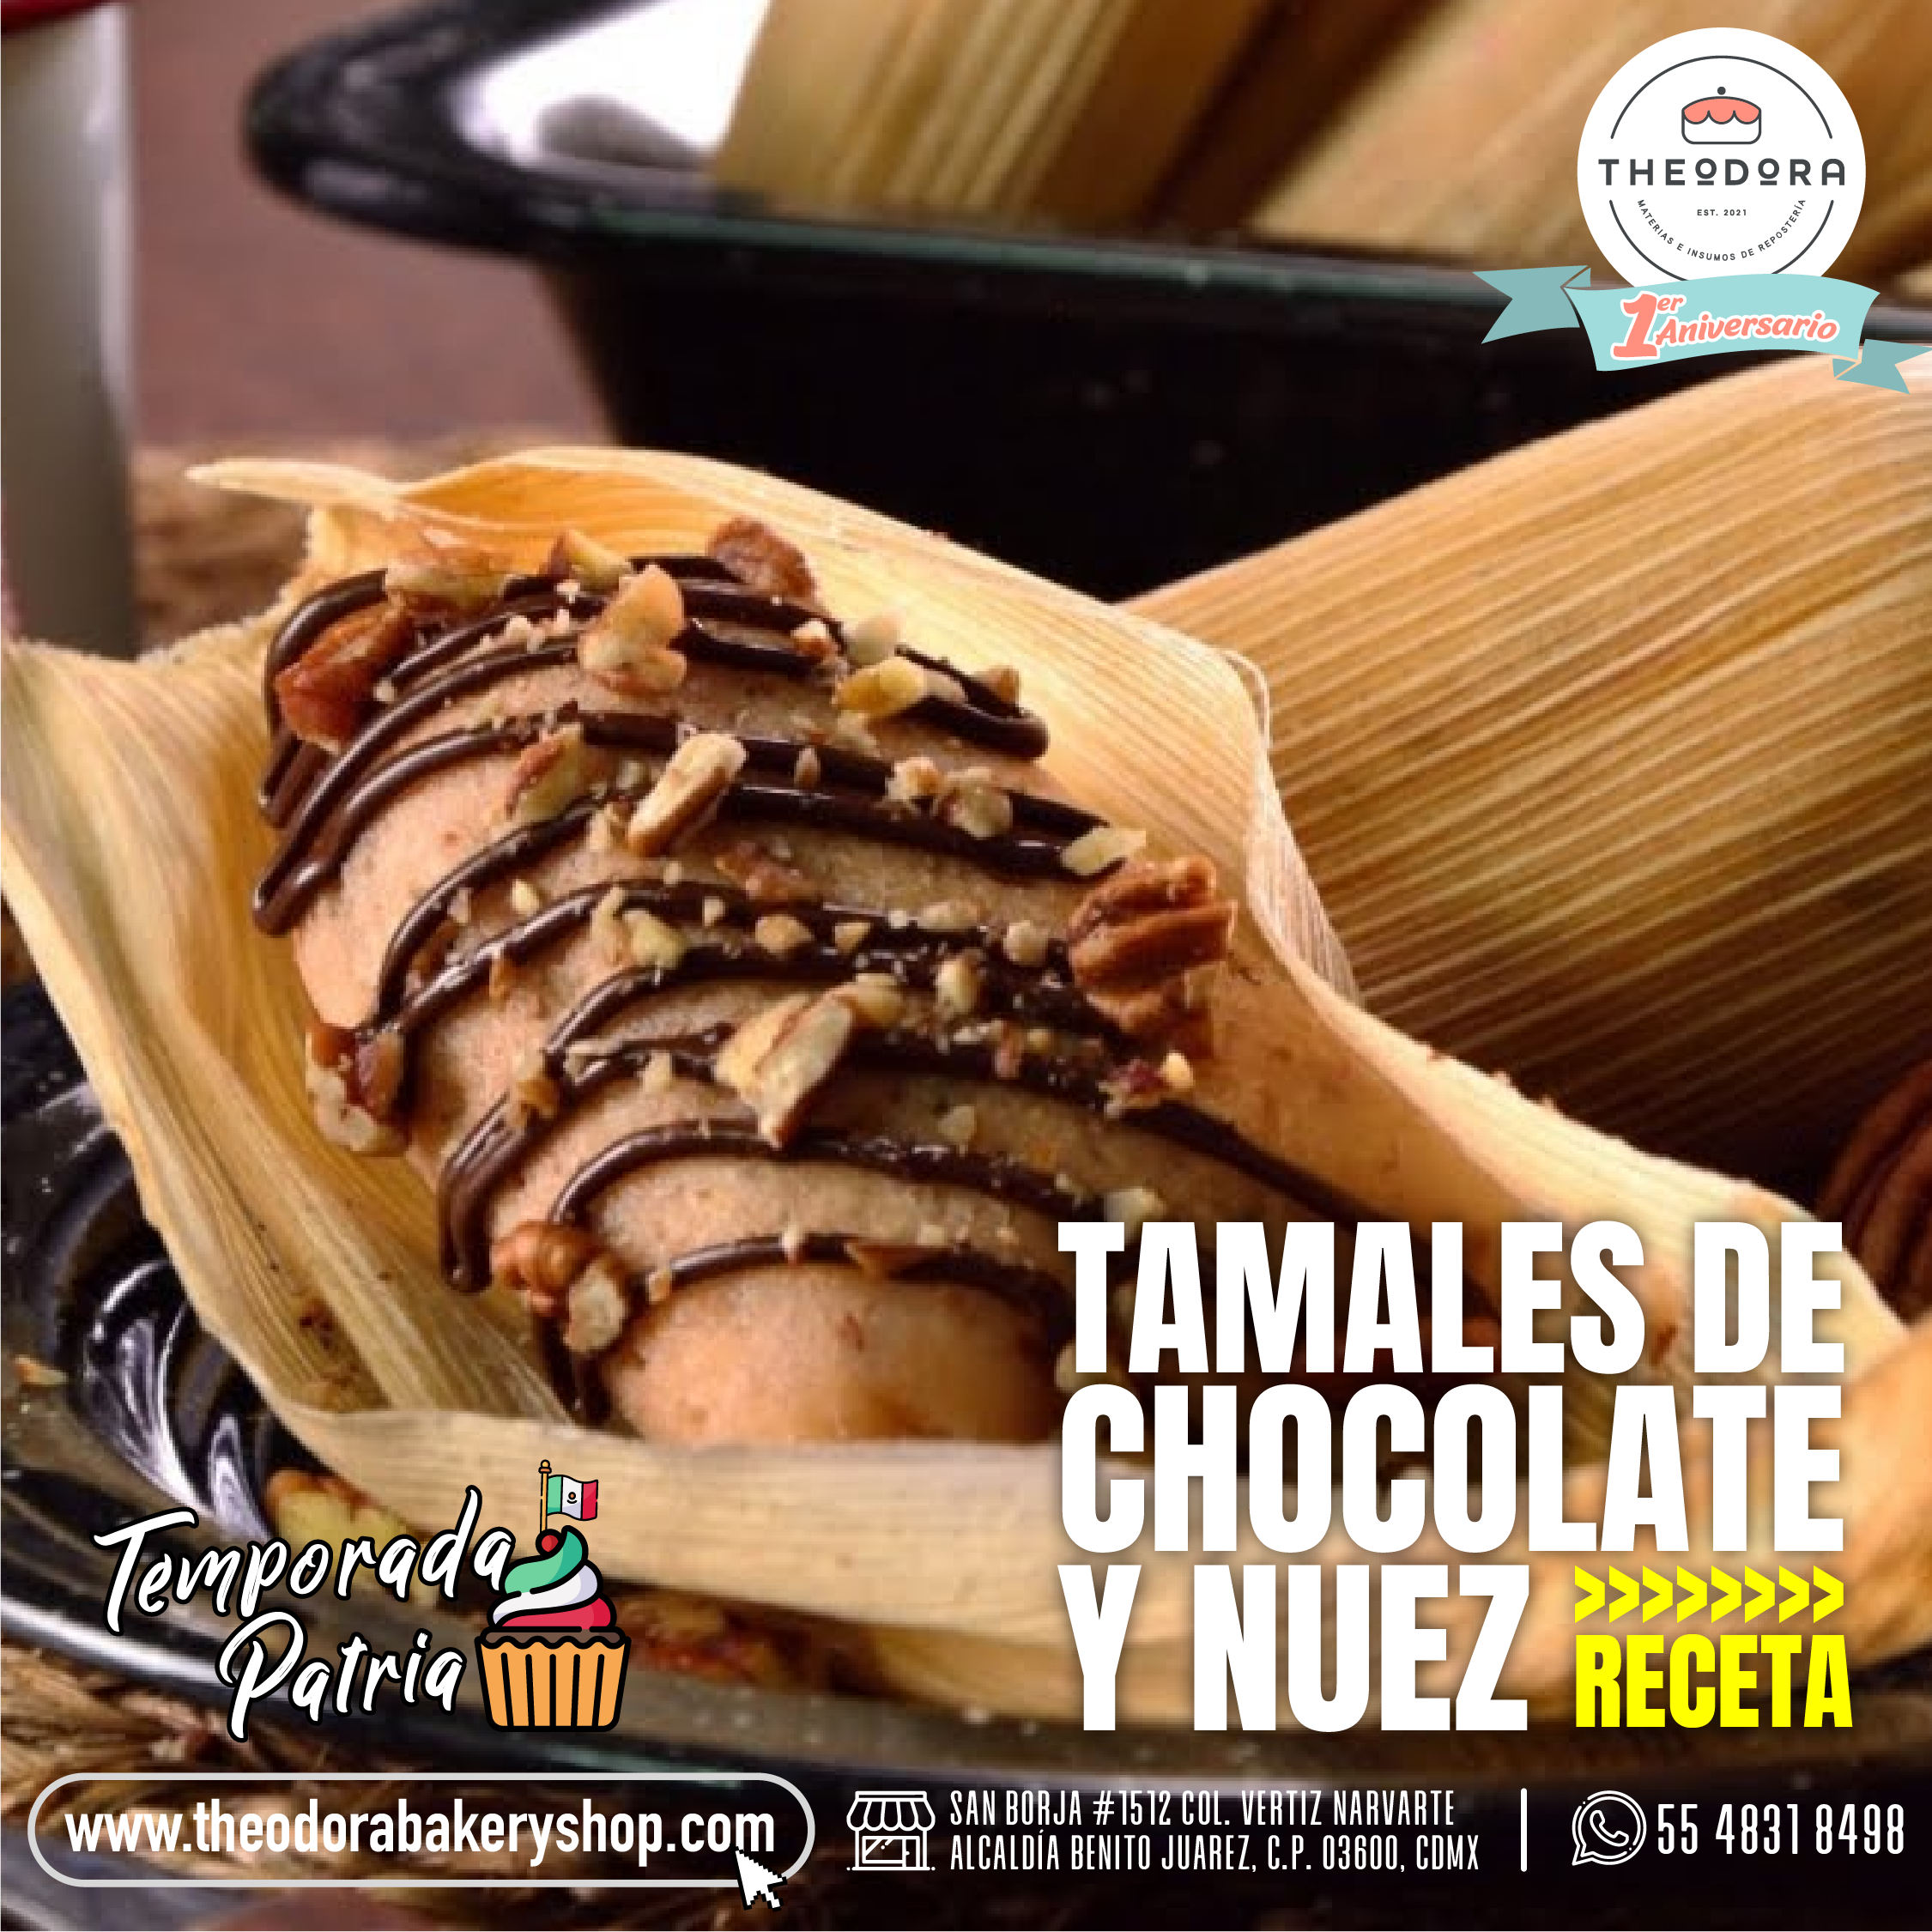 TAMALES DE CHOCOLATE Y NUEZ